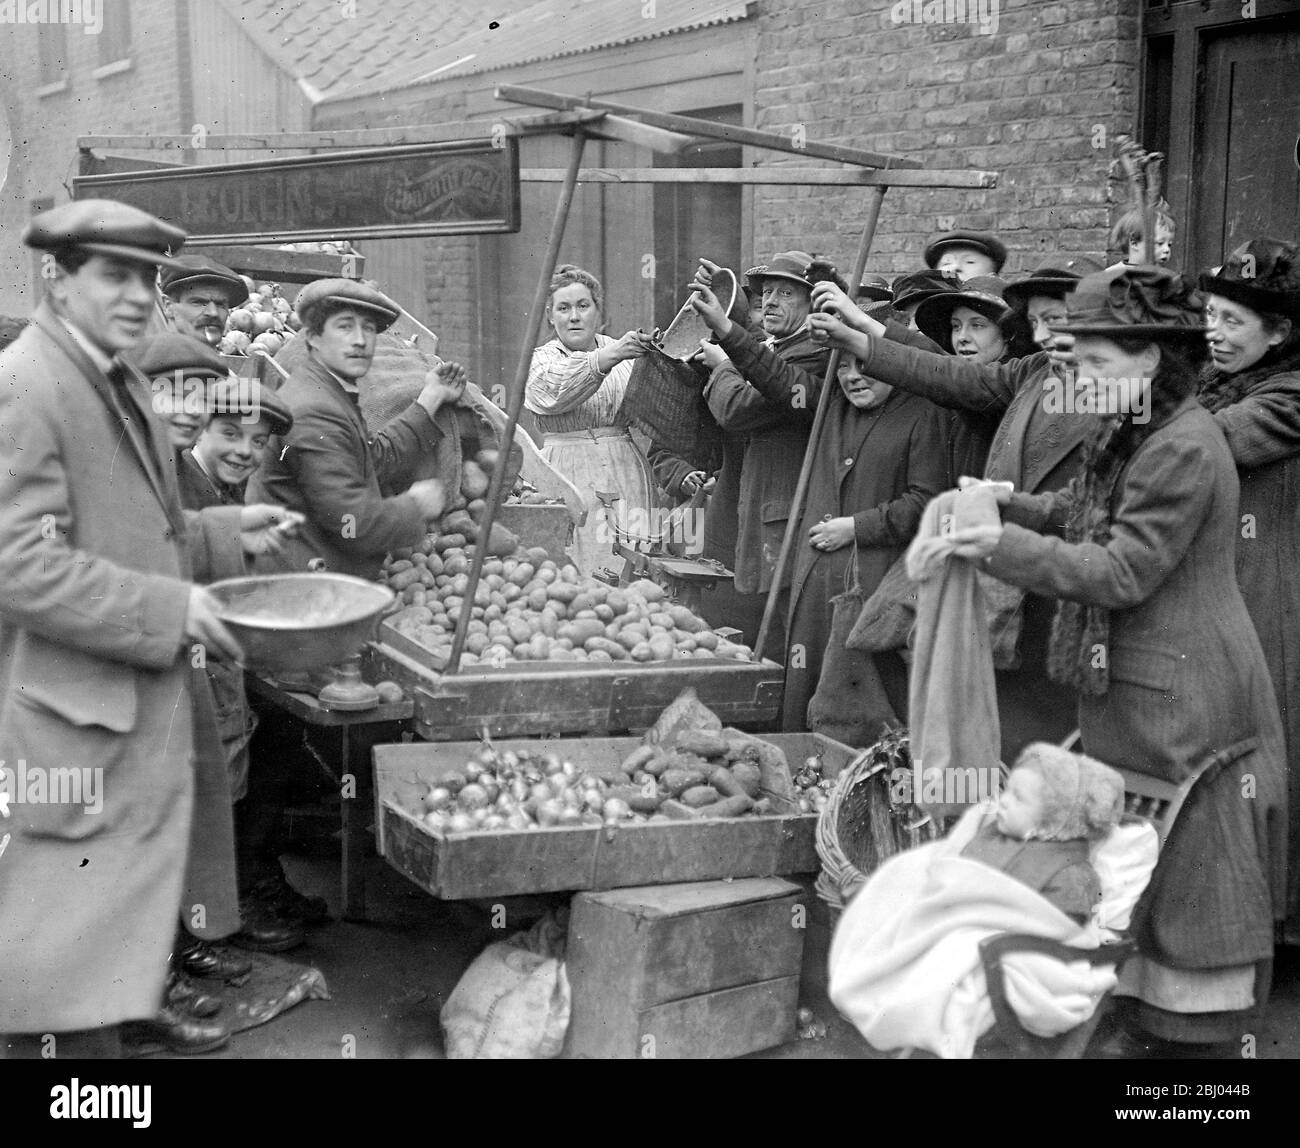 Der Kartoffelmangel - J. Collins, EIN patriotischer Gemüsehändler, der Kartoffeln zu 1d pro LB verkauft, vorausgesetzt, dass anderes Gemüse gekauft wird. - 5. März 1917 Stockfoto